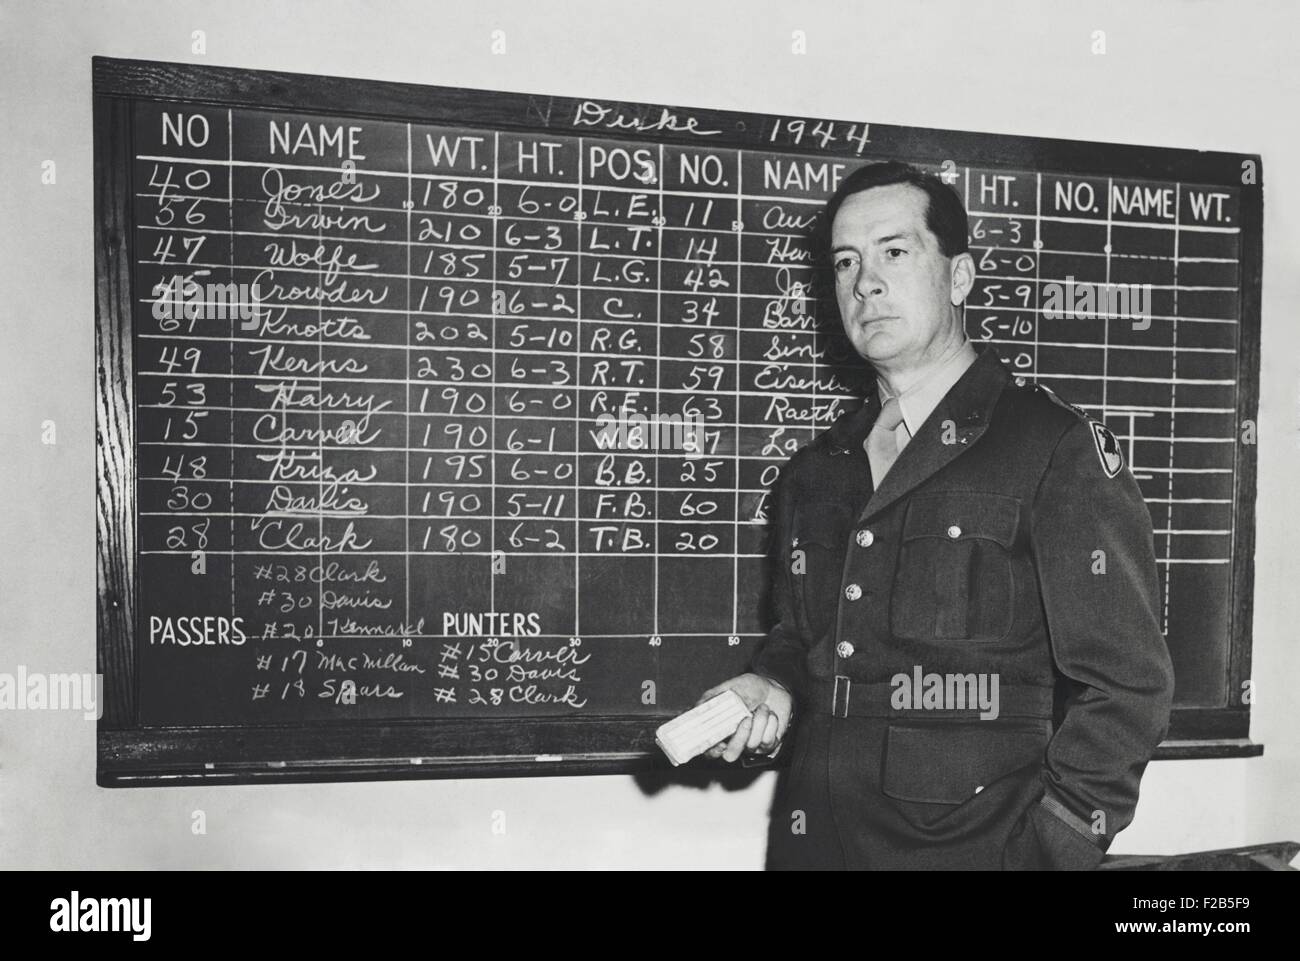 Earl (rot) Blaik war Fußballtrainer bei der United States Military Academy von 1941 bis 1958. Die Tafel Daten listet die Namen, Gewichte, Höhen und spielen Positionen der Gegner (Duke University) Spieler. 27. Oktober 1944. -(BSLOC 2014 17 172) Stockfoto